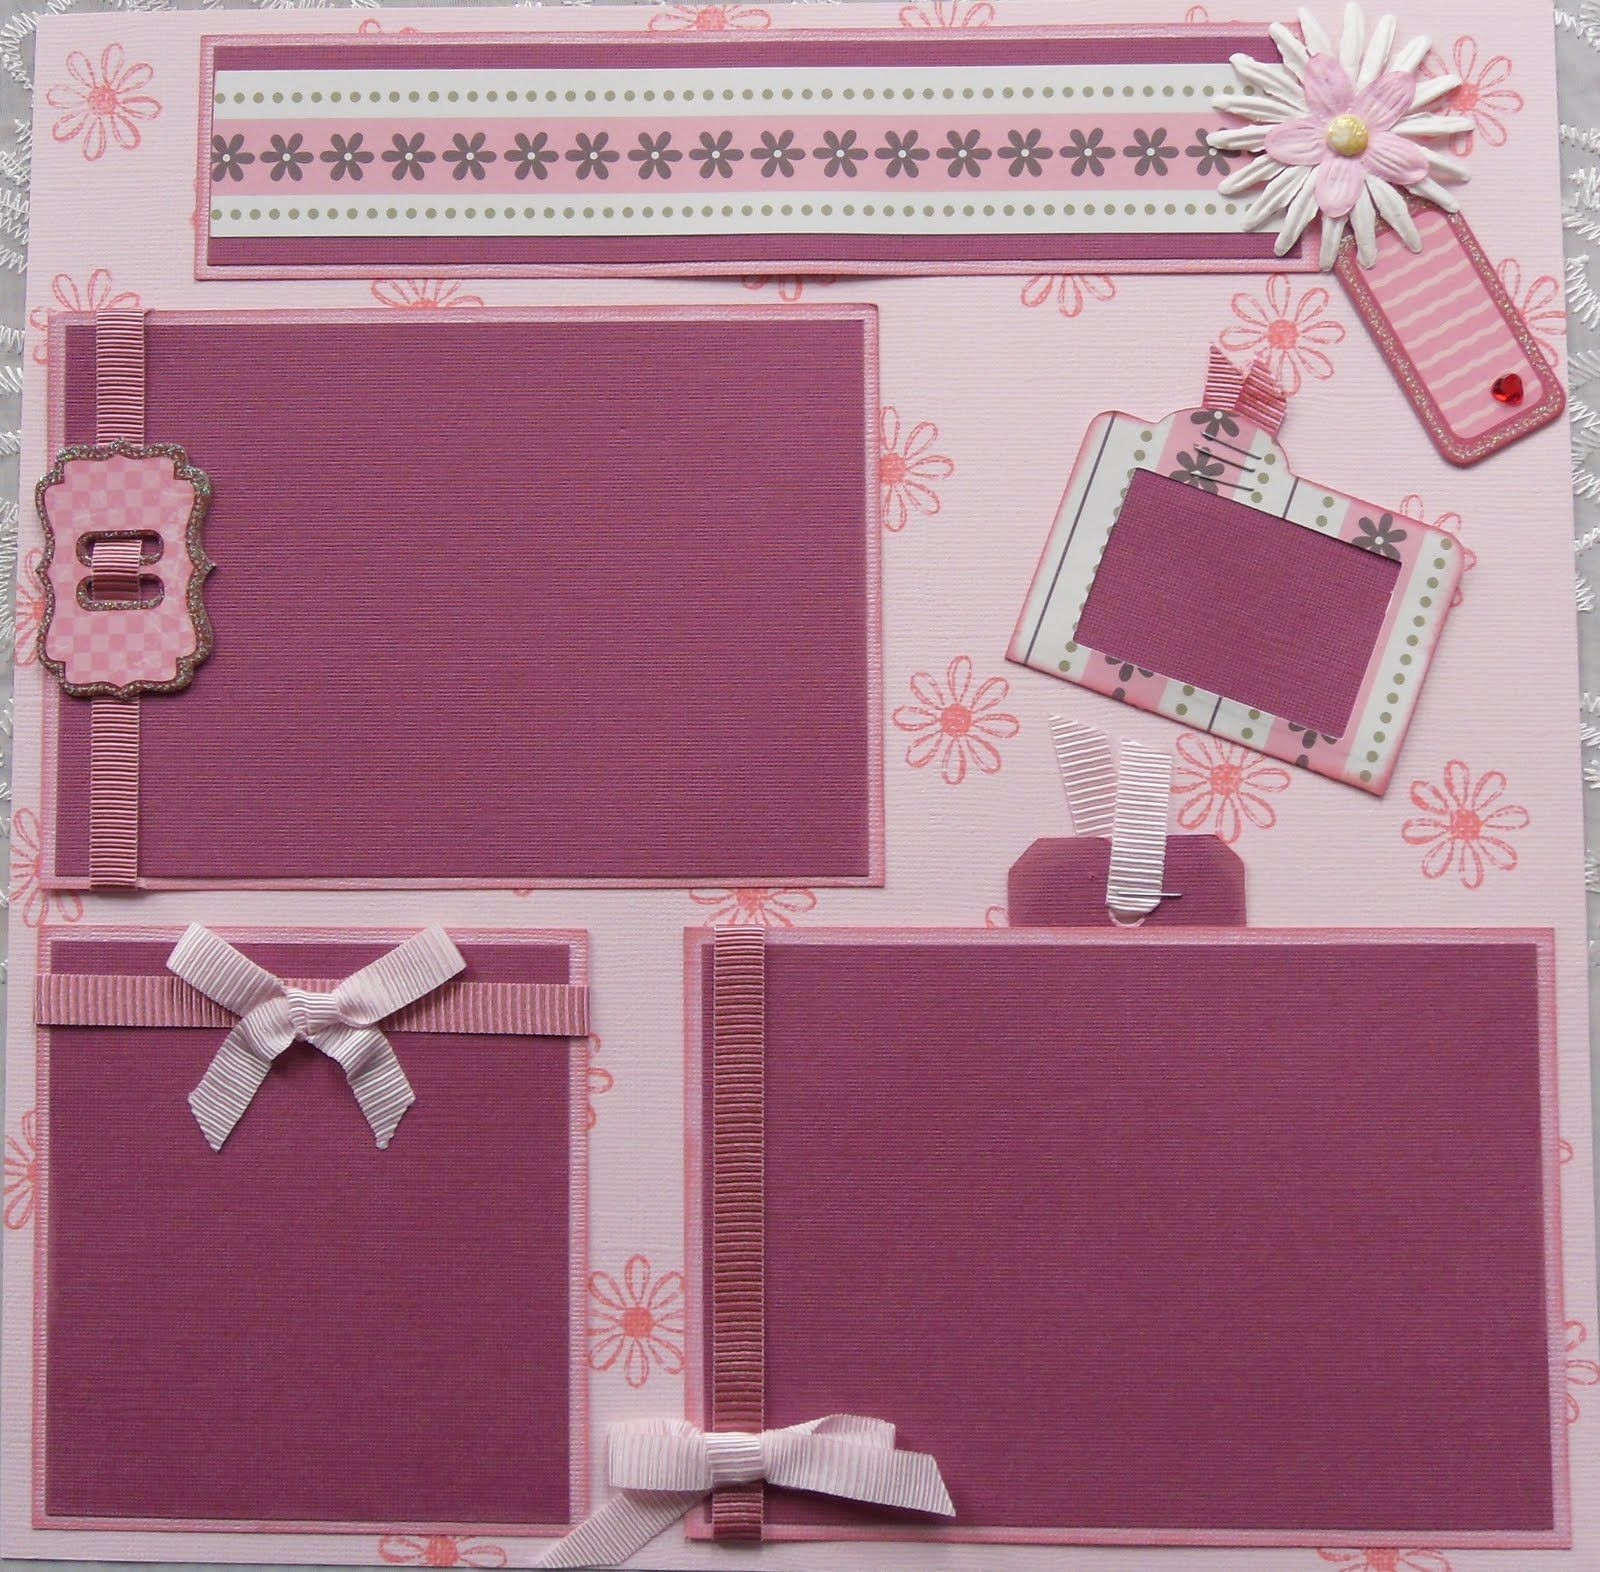 DIY Baby Scrapbook
 DIY pre made baby girl scrapbook page layouts